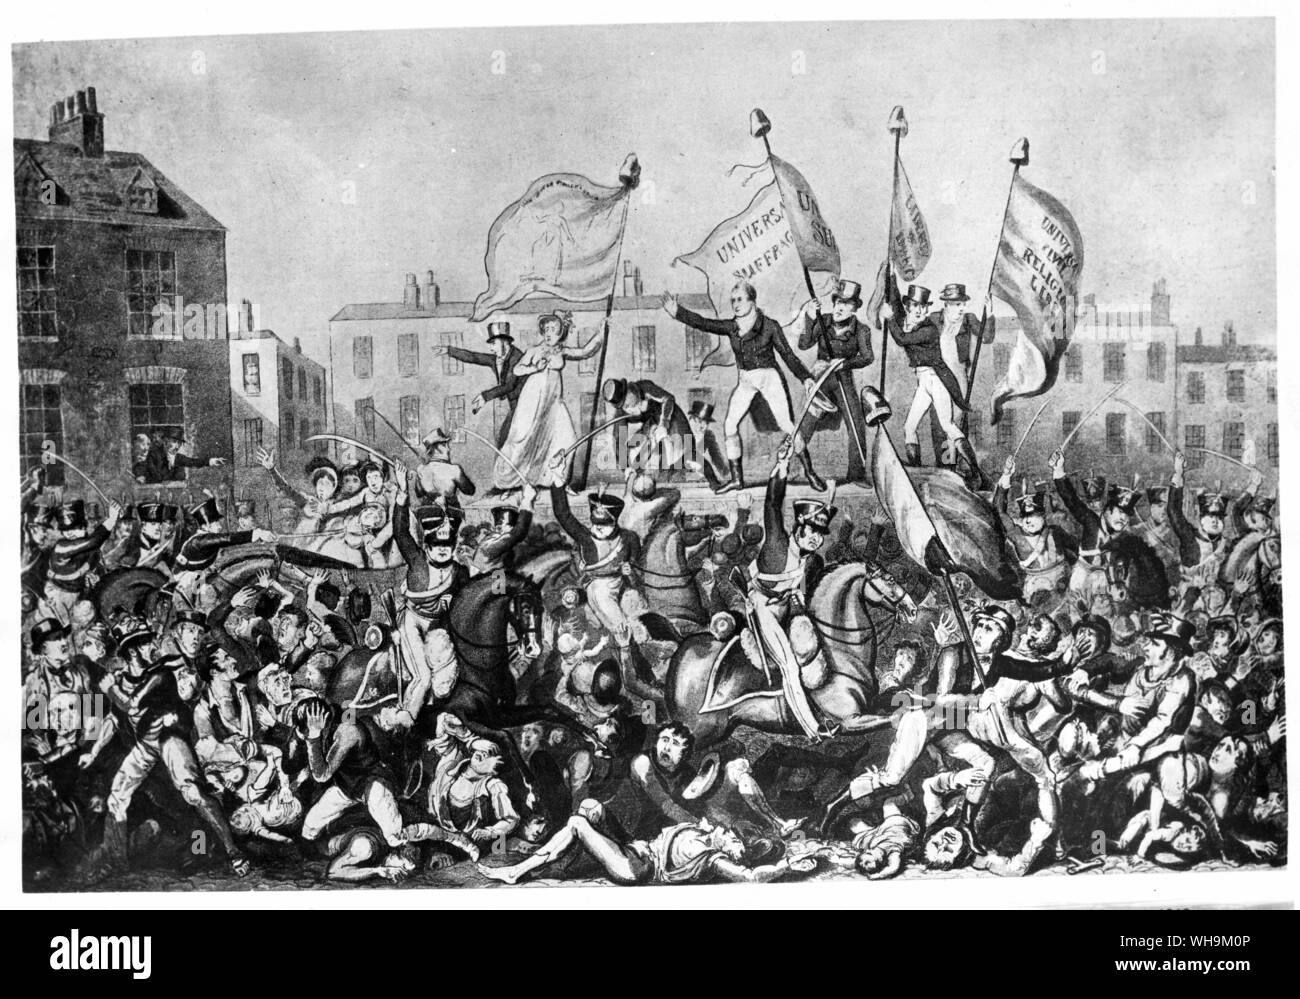 16 août 1819 Peterloo, rupture d'une réunion de masse de réforme parlementaire tenue à St Peter's Field Manchester. La Yeomanry Manchester facturés sur la foule tuant 1 personnes Banque D'Images